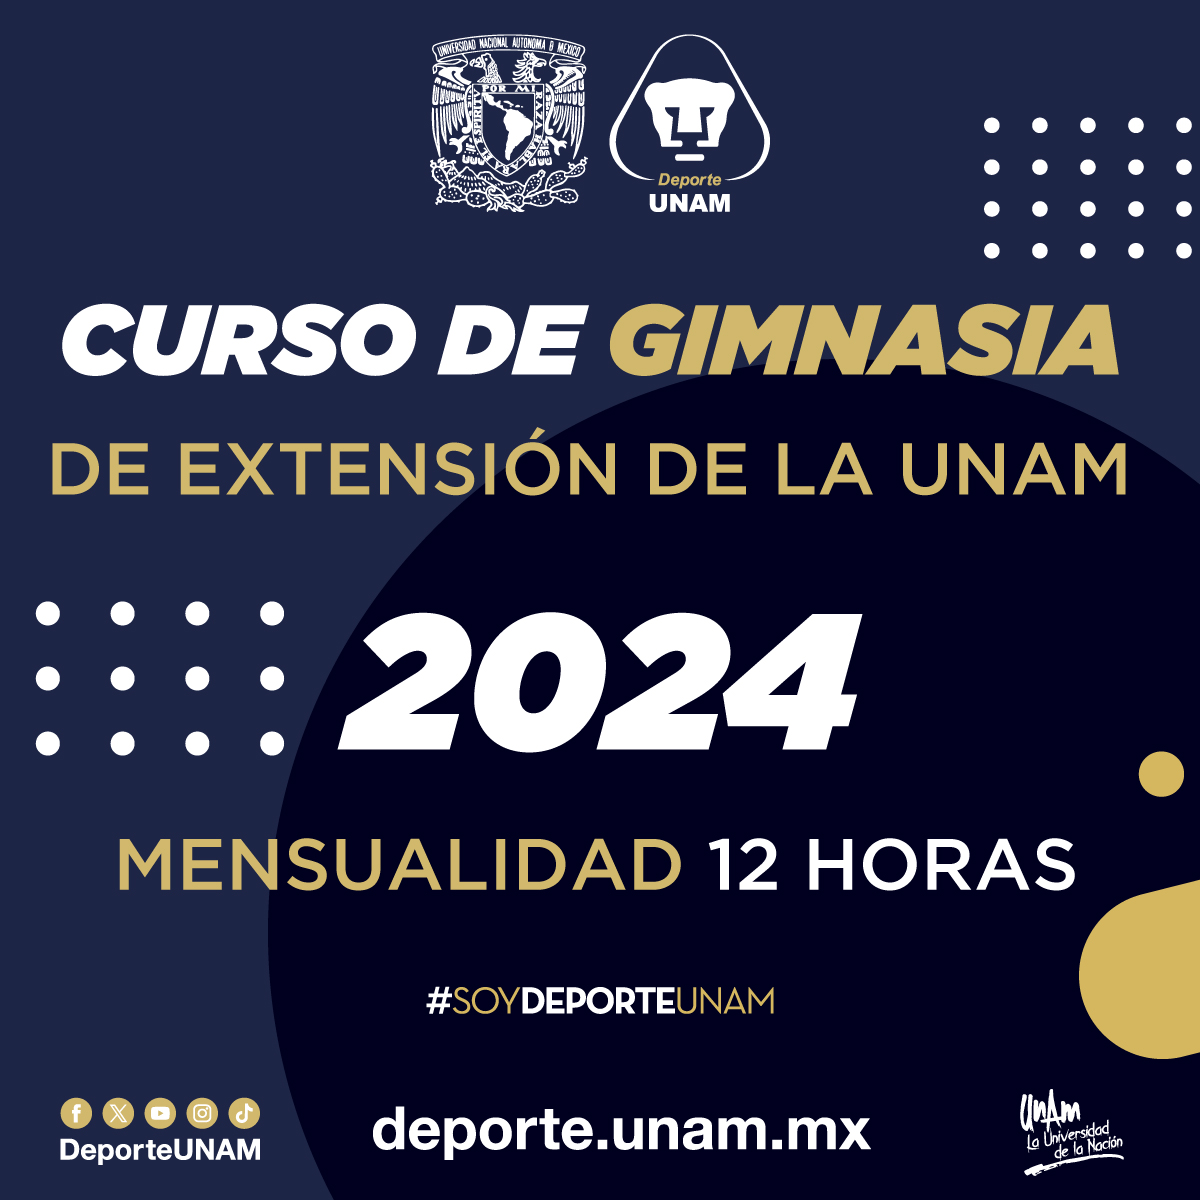 CURSO DE GIMNASIA DE EXTENSIÓN DE LA UNAM 2024 MENSUALIDAD 12 HORAS